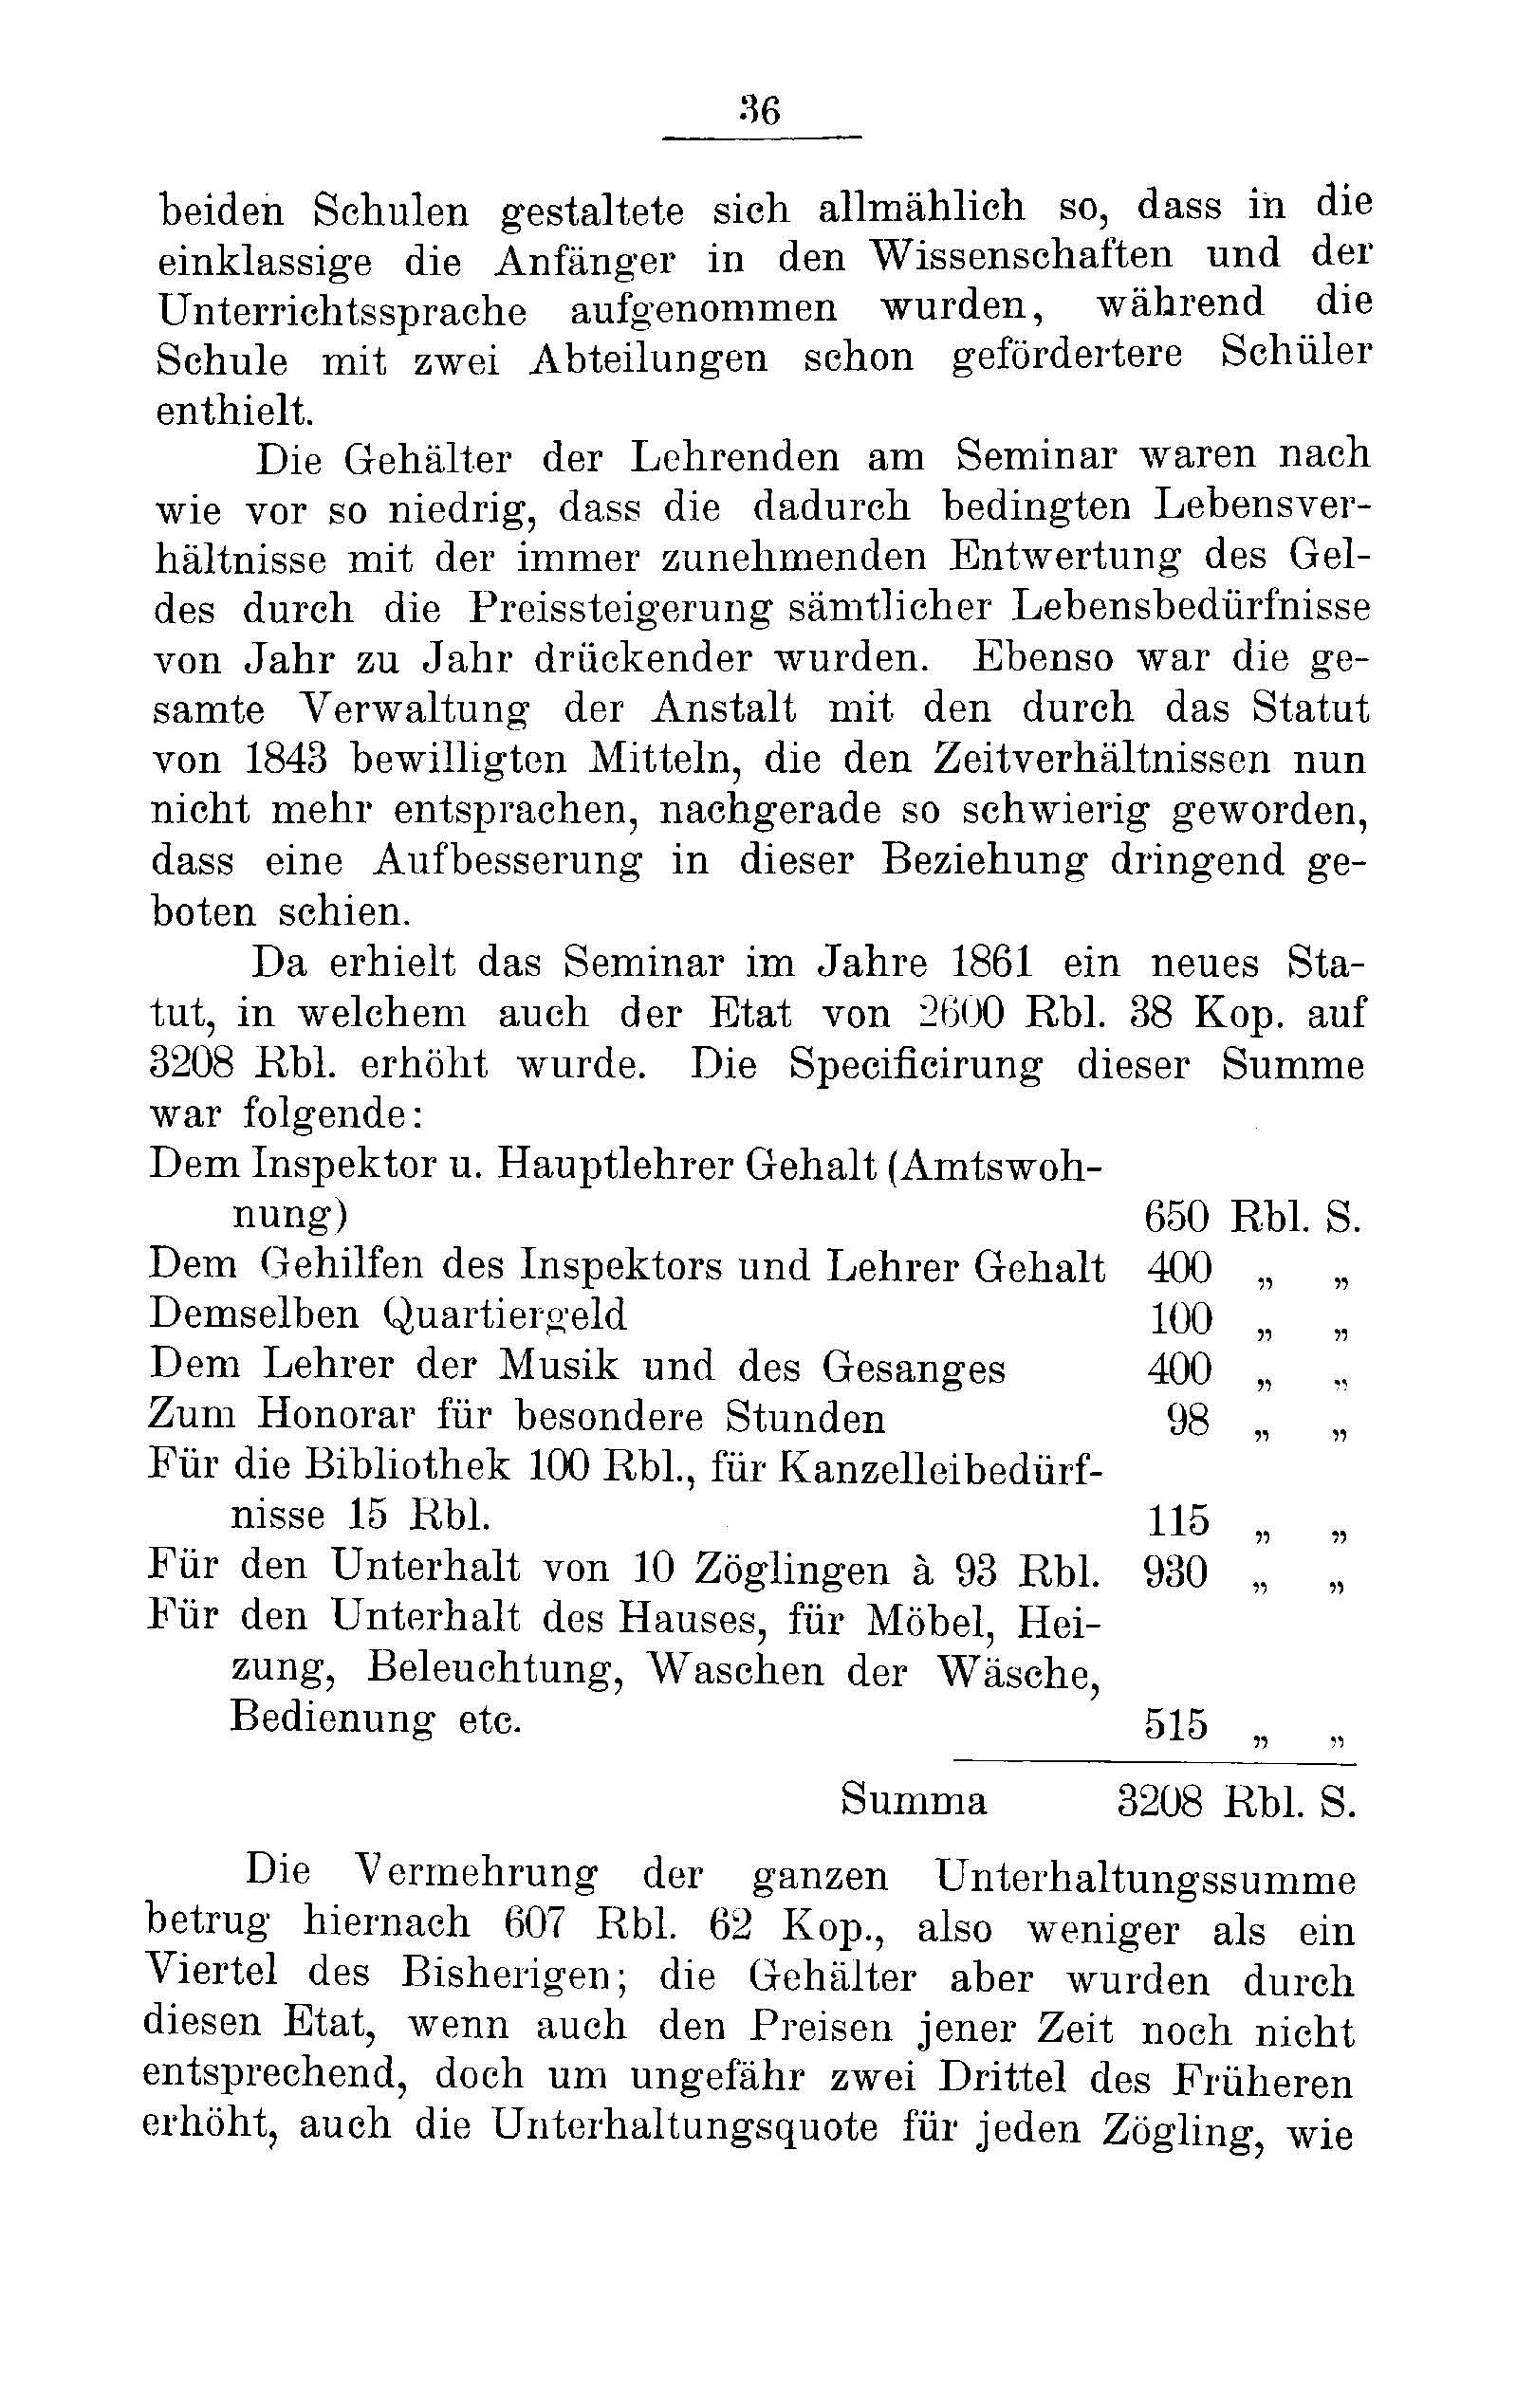 Das Erste Dorpatsche Lehrer-Seminar (1890) | 38. Haupttext